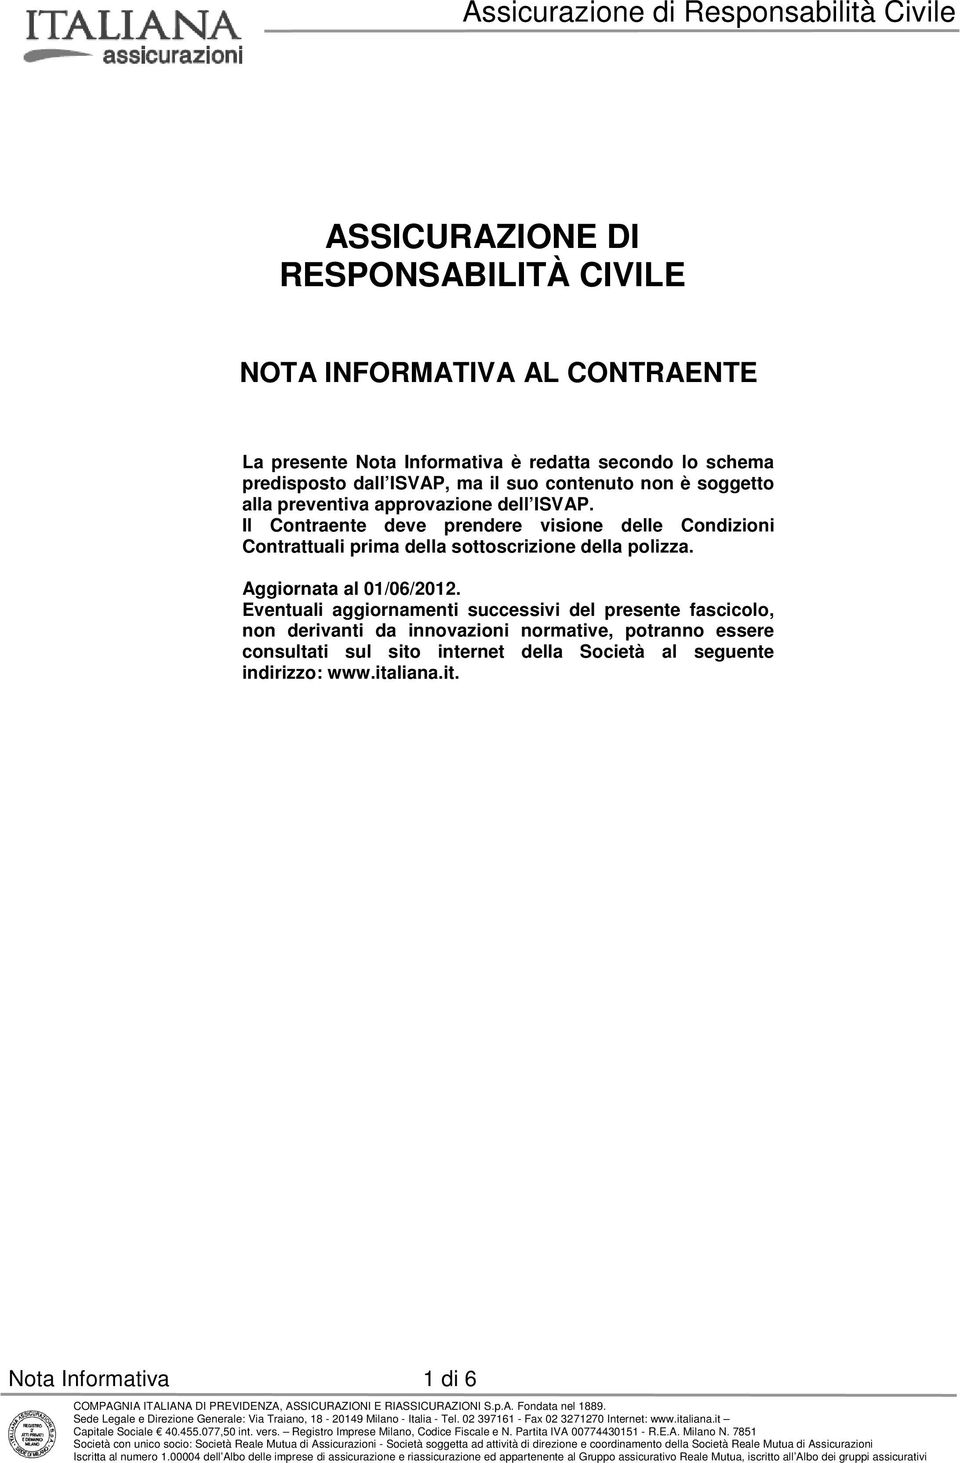 Il Contraente deve prendere visione delle Condizioni Contrattuali prima della sottoscrizione della polizza. Aggiornata al 01/06/2012.